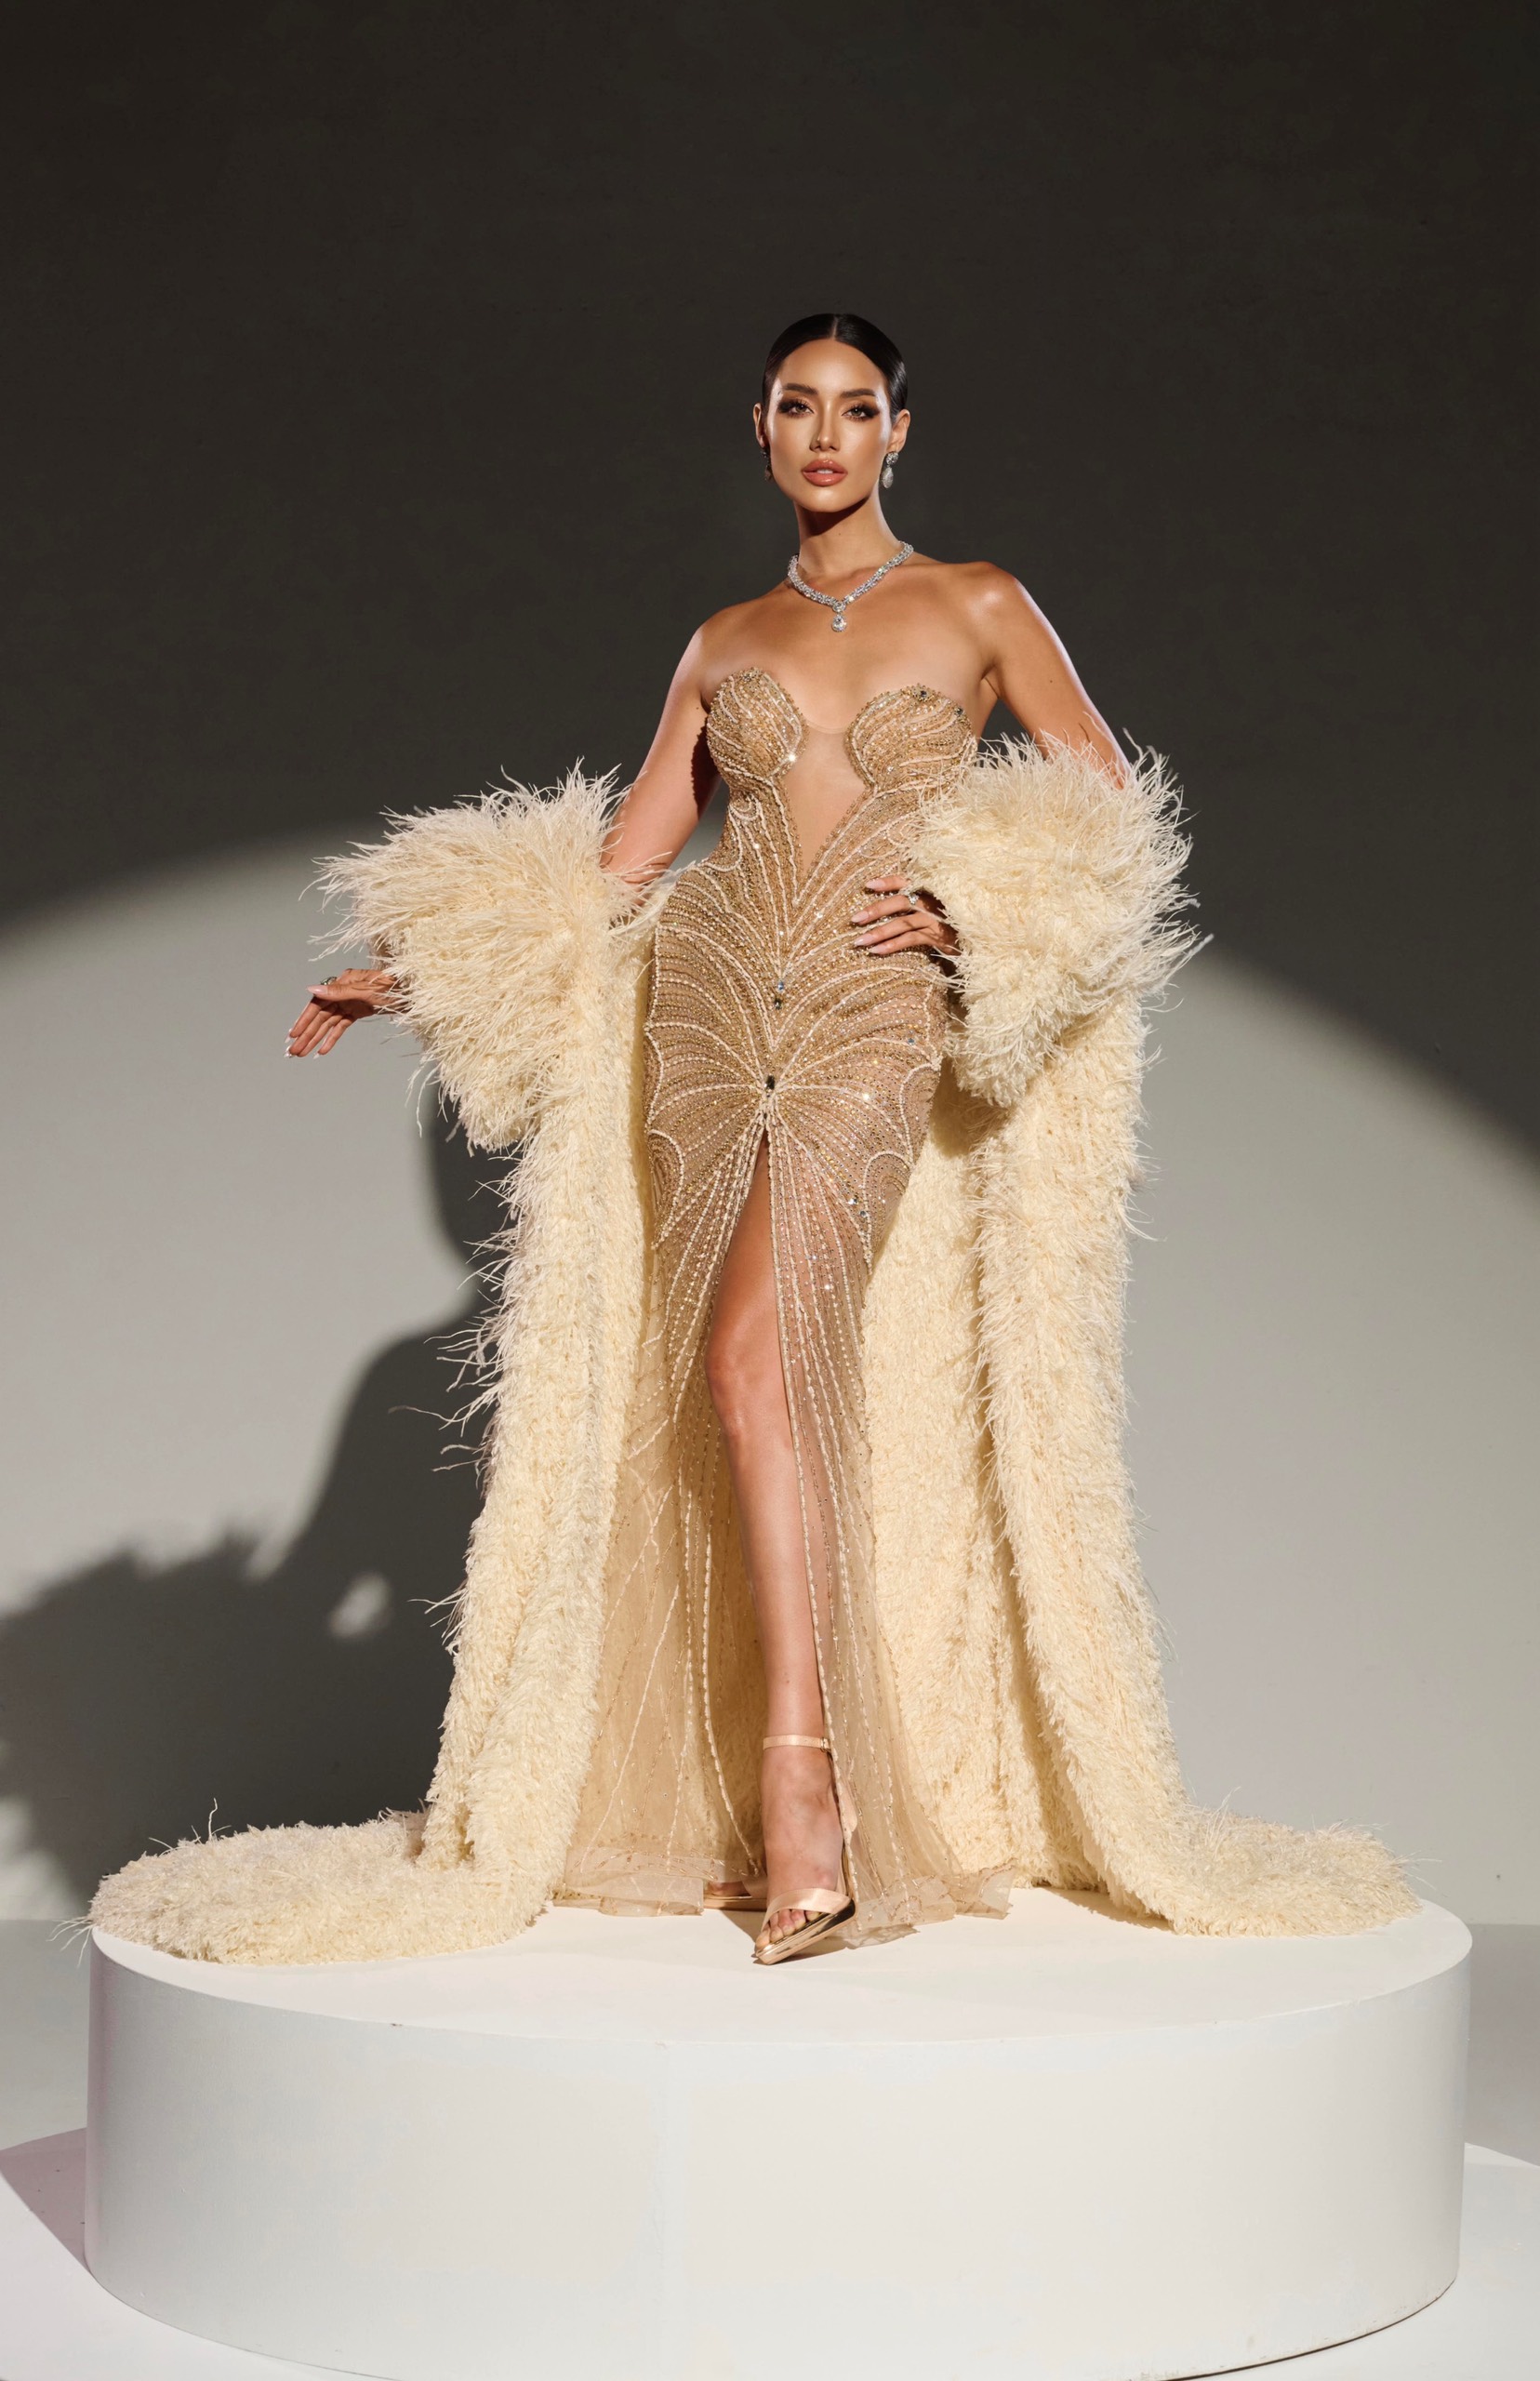 Trong đêm thi bán kết tại Miss Supranational 2024, đại diện Việt Nam sẽ diện thiết kế Butterfly gown, lấy cảm hứng từ chính câu chuyện mình và được sáng tạo bởi NTK Nguyễn Minh Tuấn. Thiết kế được đính kết tỉ mỉ trên nền chất liệu xuyên thấu với gam màu nude bạc nhẹ nhàng, uyển chuyển. 